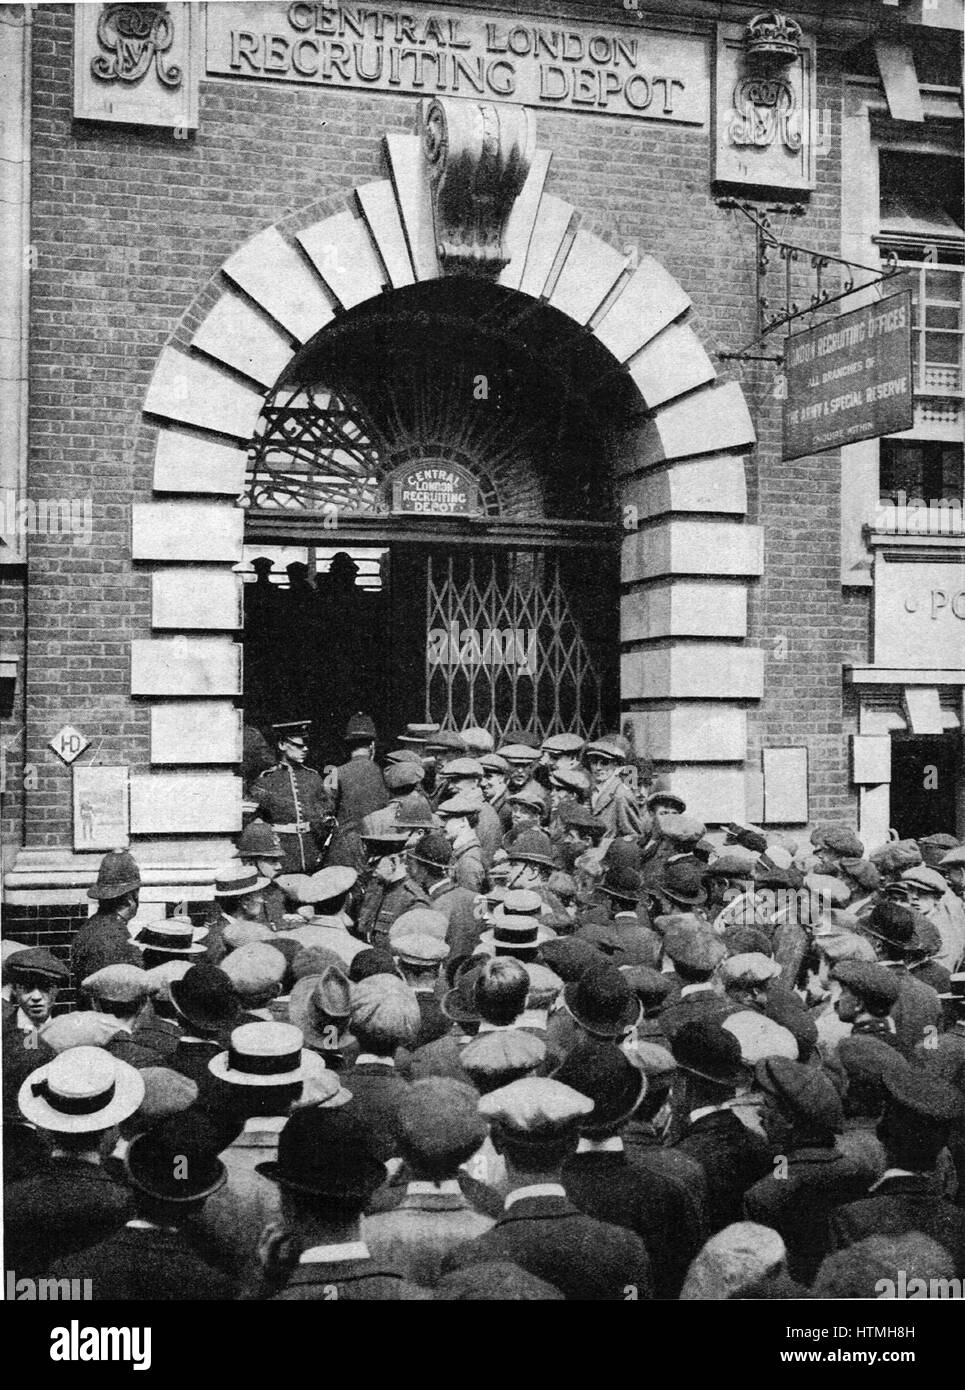 Dépôt de recrutement centre de Londres pendant la Première Guerre mondiale, 1914 Banque D'Images